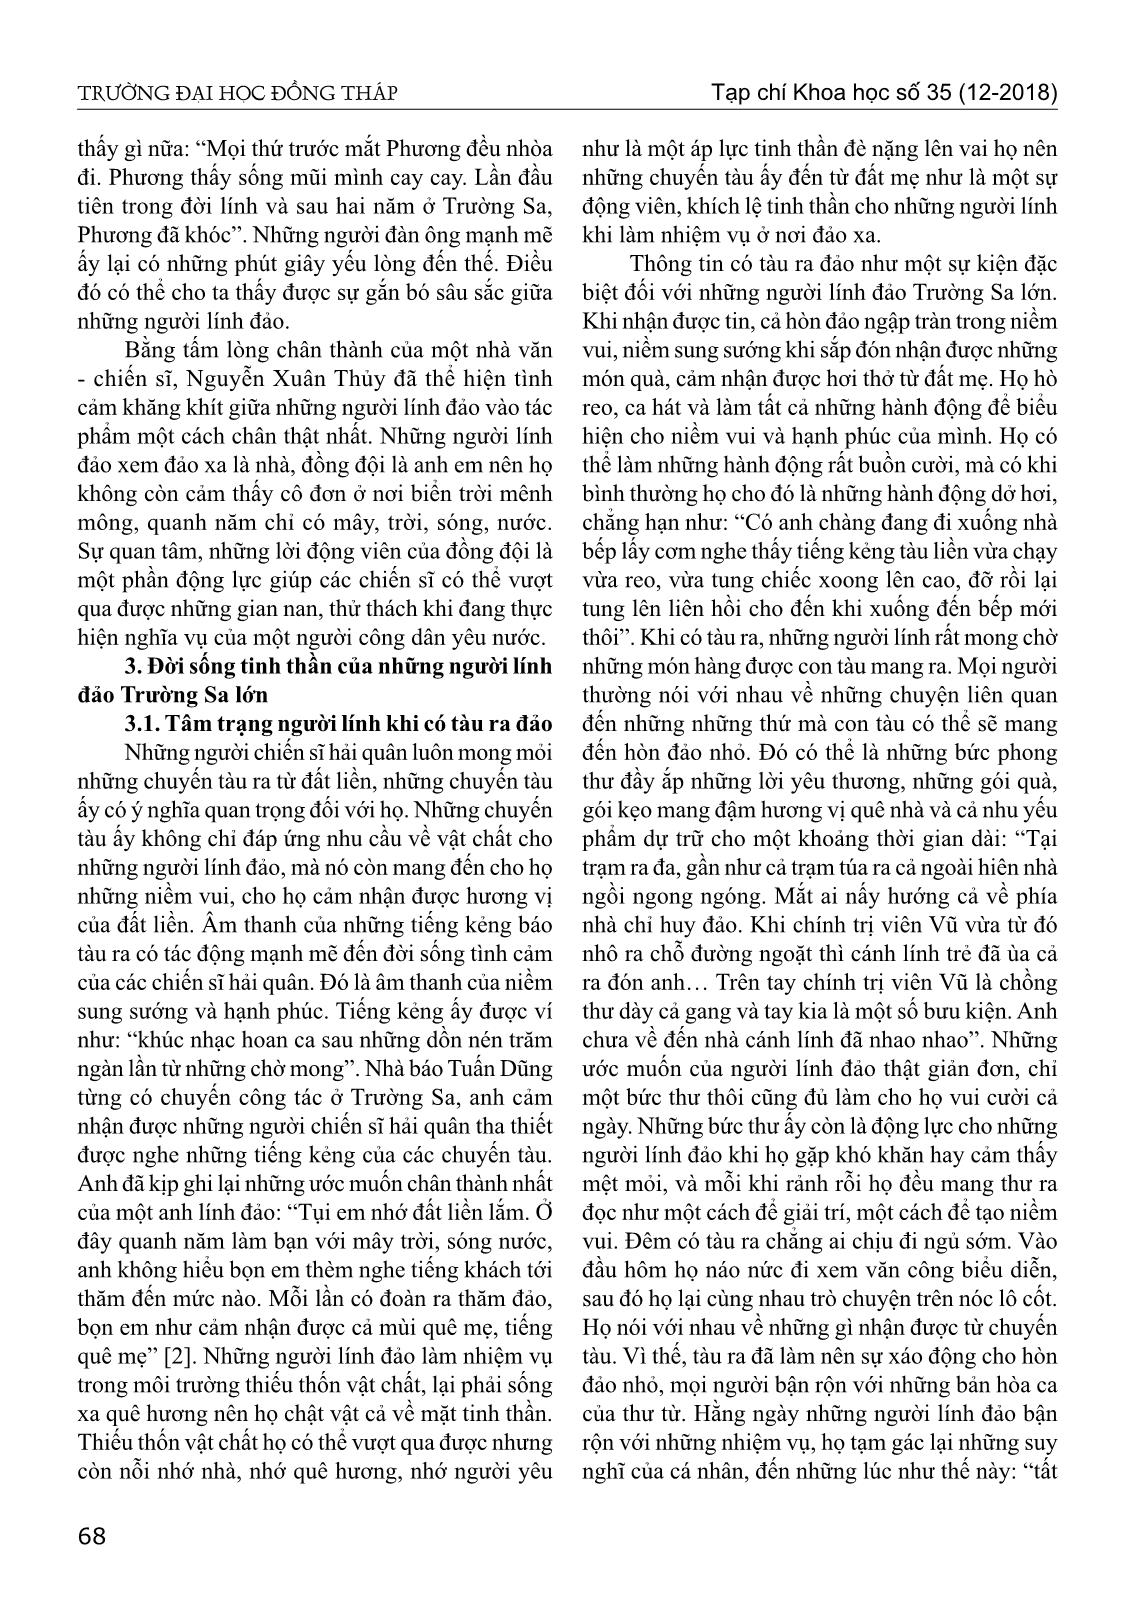 Chân dung người lính biển trong tiểu thuyết biển xanh màu lá của Nguyễn Xuân Thủy trang 5